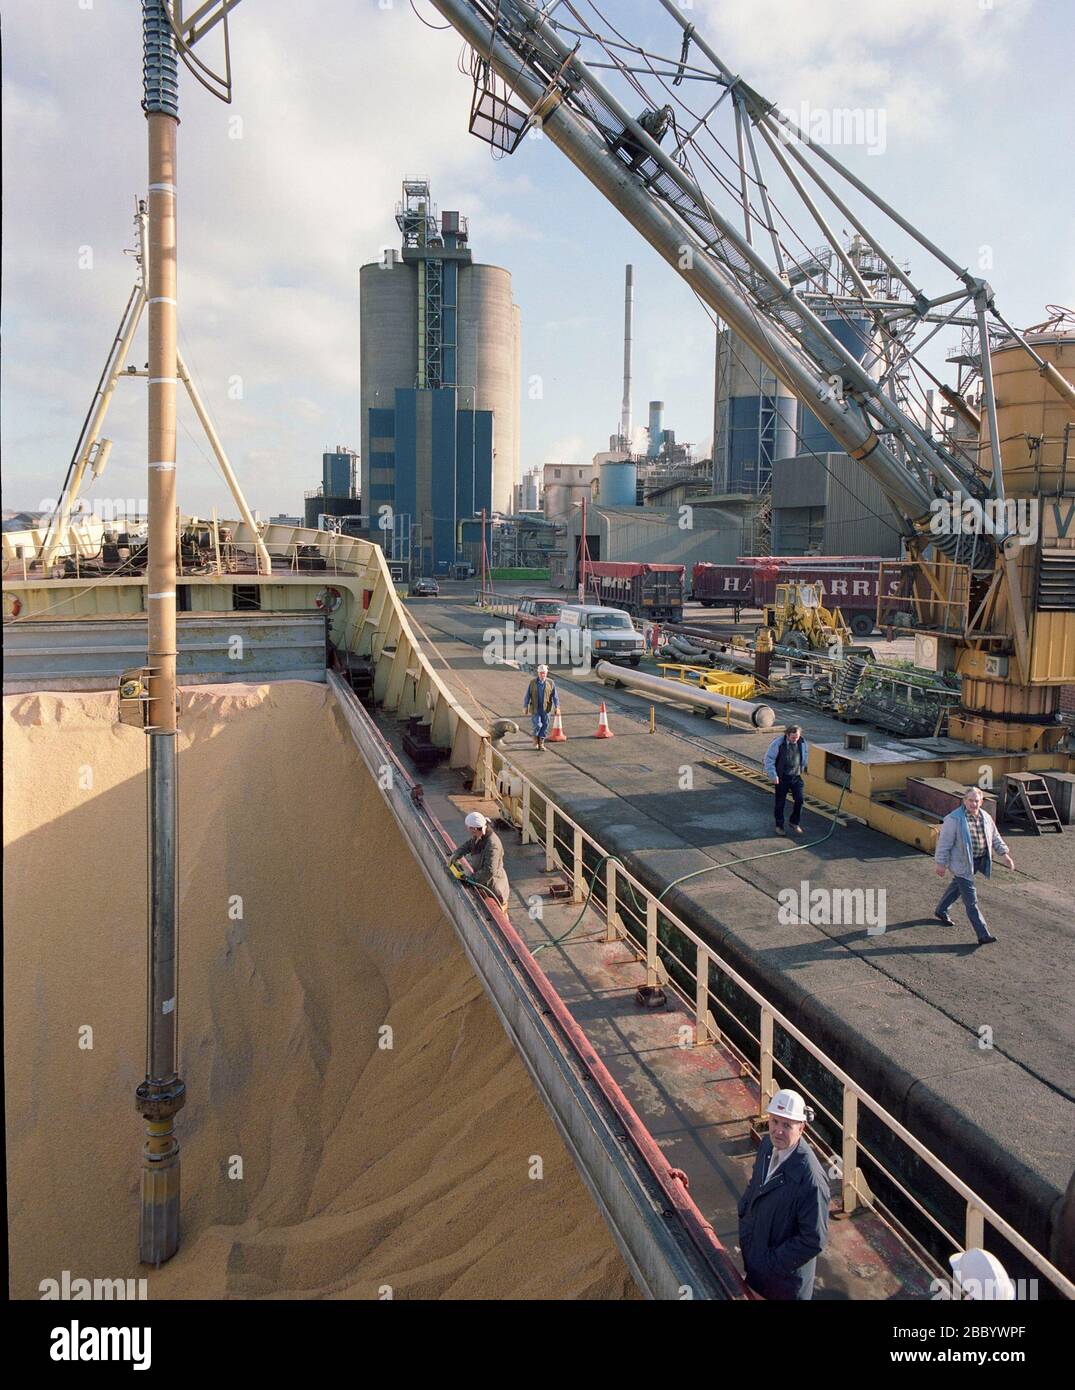 1988, Fabrik in Trafford Park, manchester, North West England, Großbritannien, das Getreide vom Schiff auf dem Schiffskanal ablädt Stockfoto